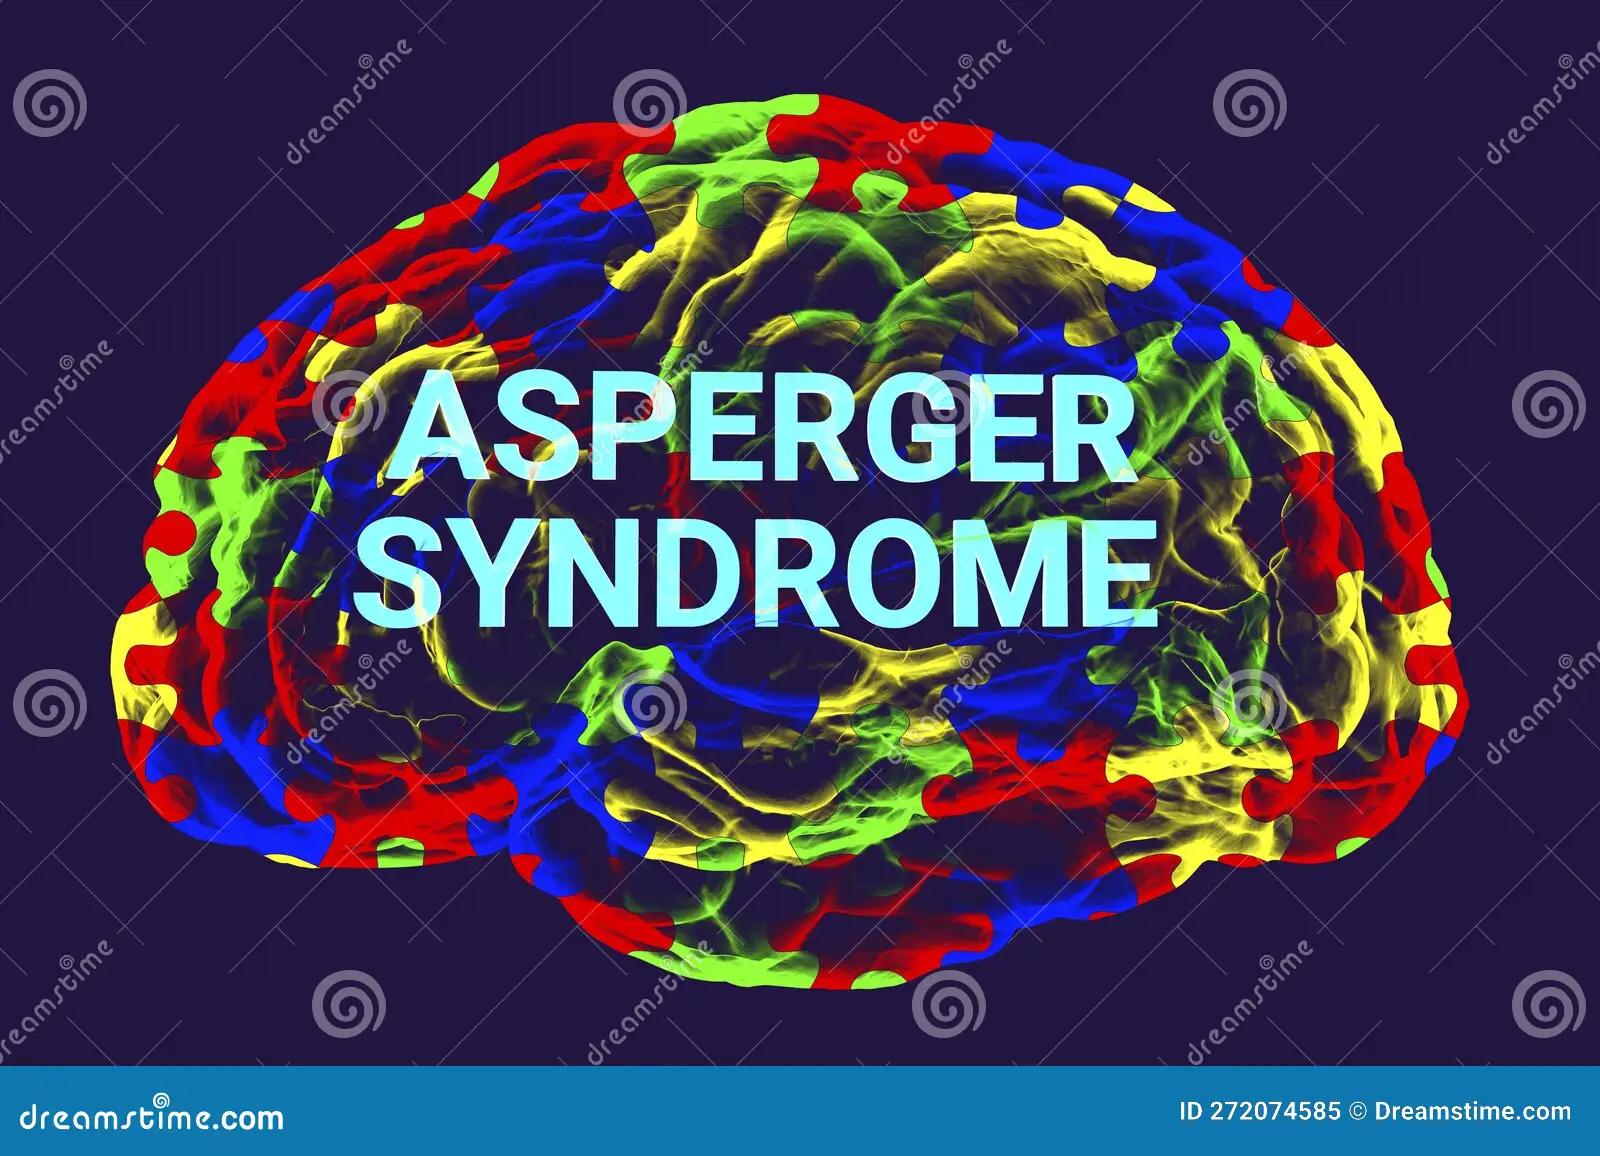 asperger inteligencia conceptual - Qué coeficiente intelectual tienen los pacientes con Asperger